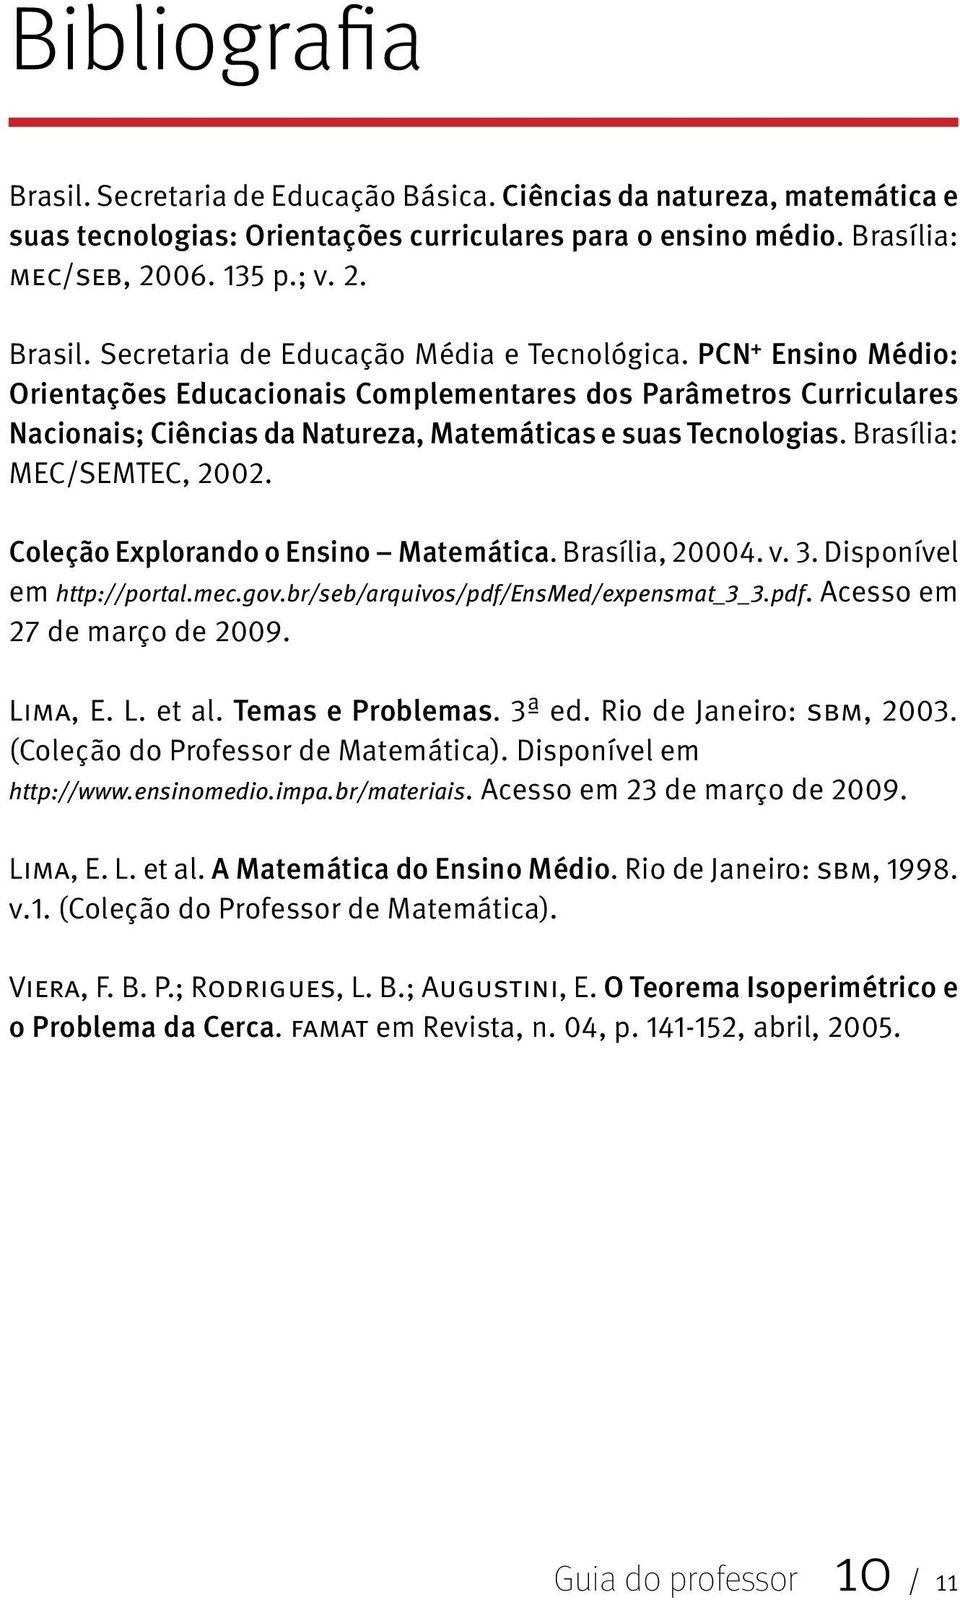 Brasília: MEC/SEMTEC, 2002. Coleção Explorando o Ensino Matemática. Brasília, 20004. v. 3. Disponível em http://portal.mec.gov.br/seb/arquivos/pdf/ensmed/expensmat_3_3.pdf. Acesso em 27 de março de 2009.